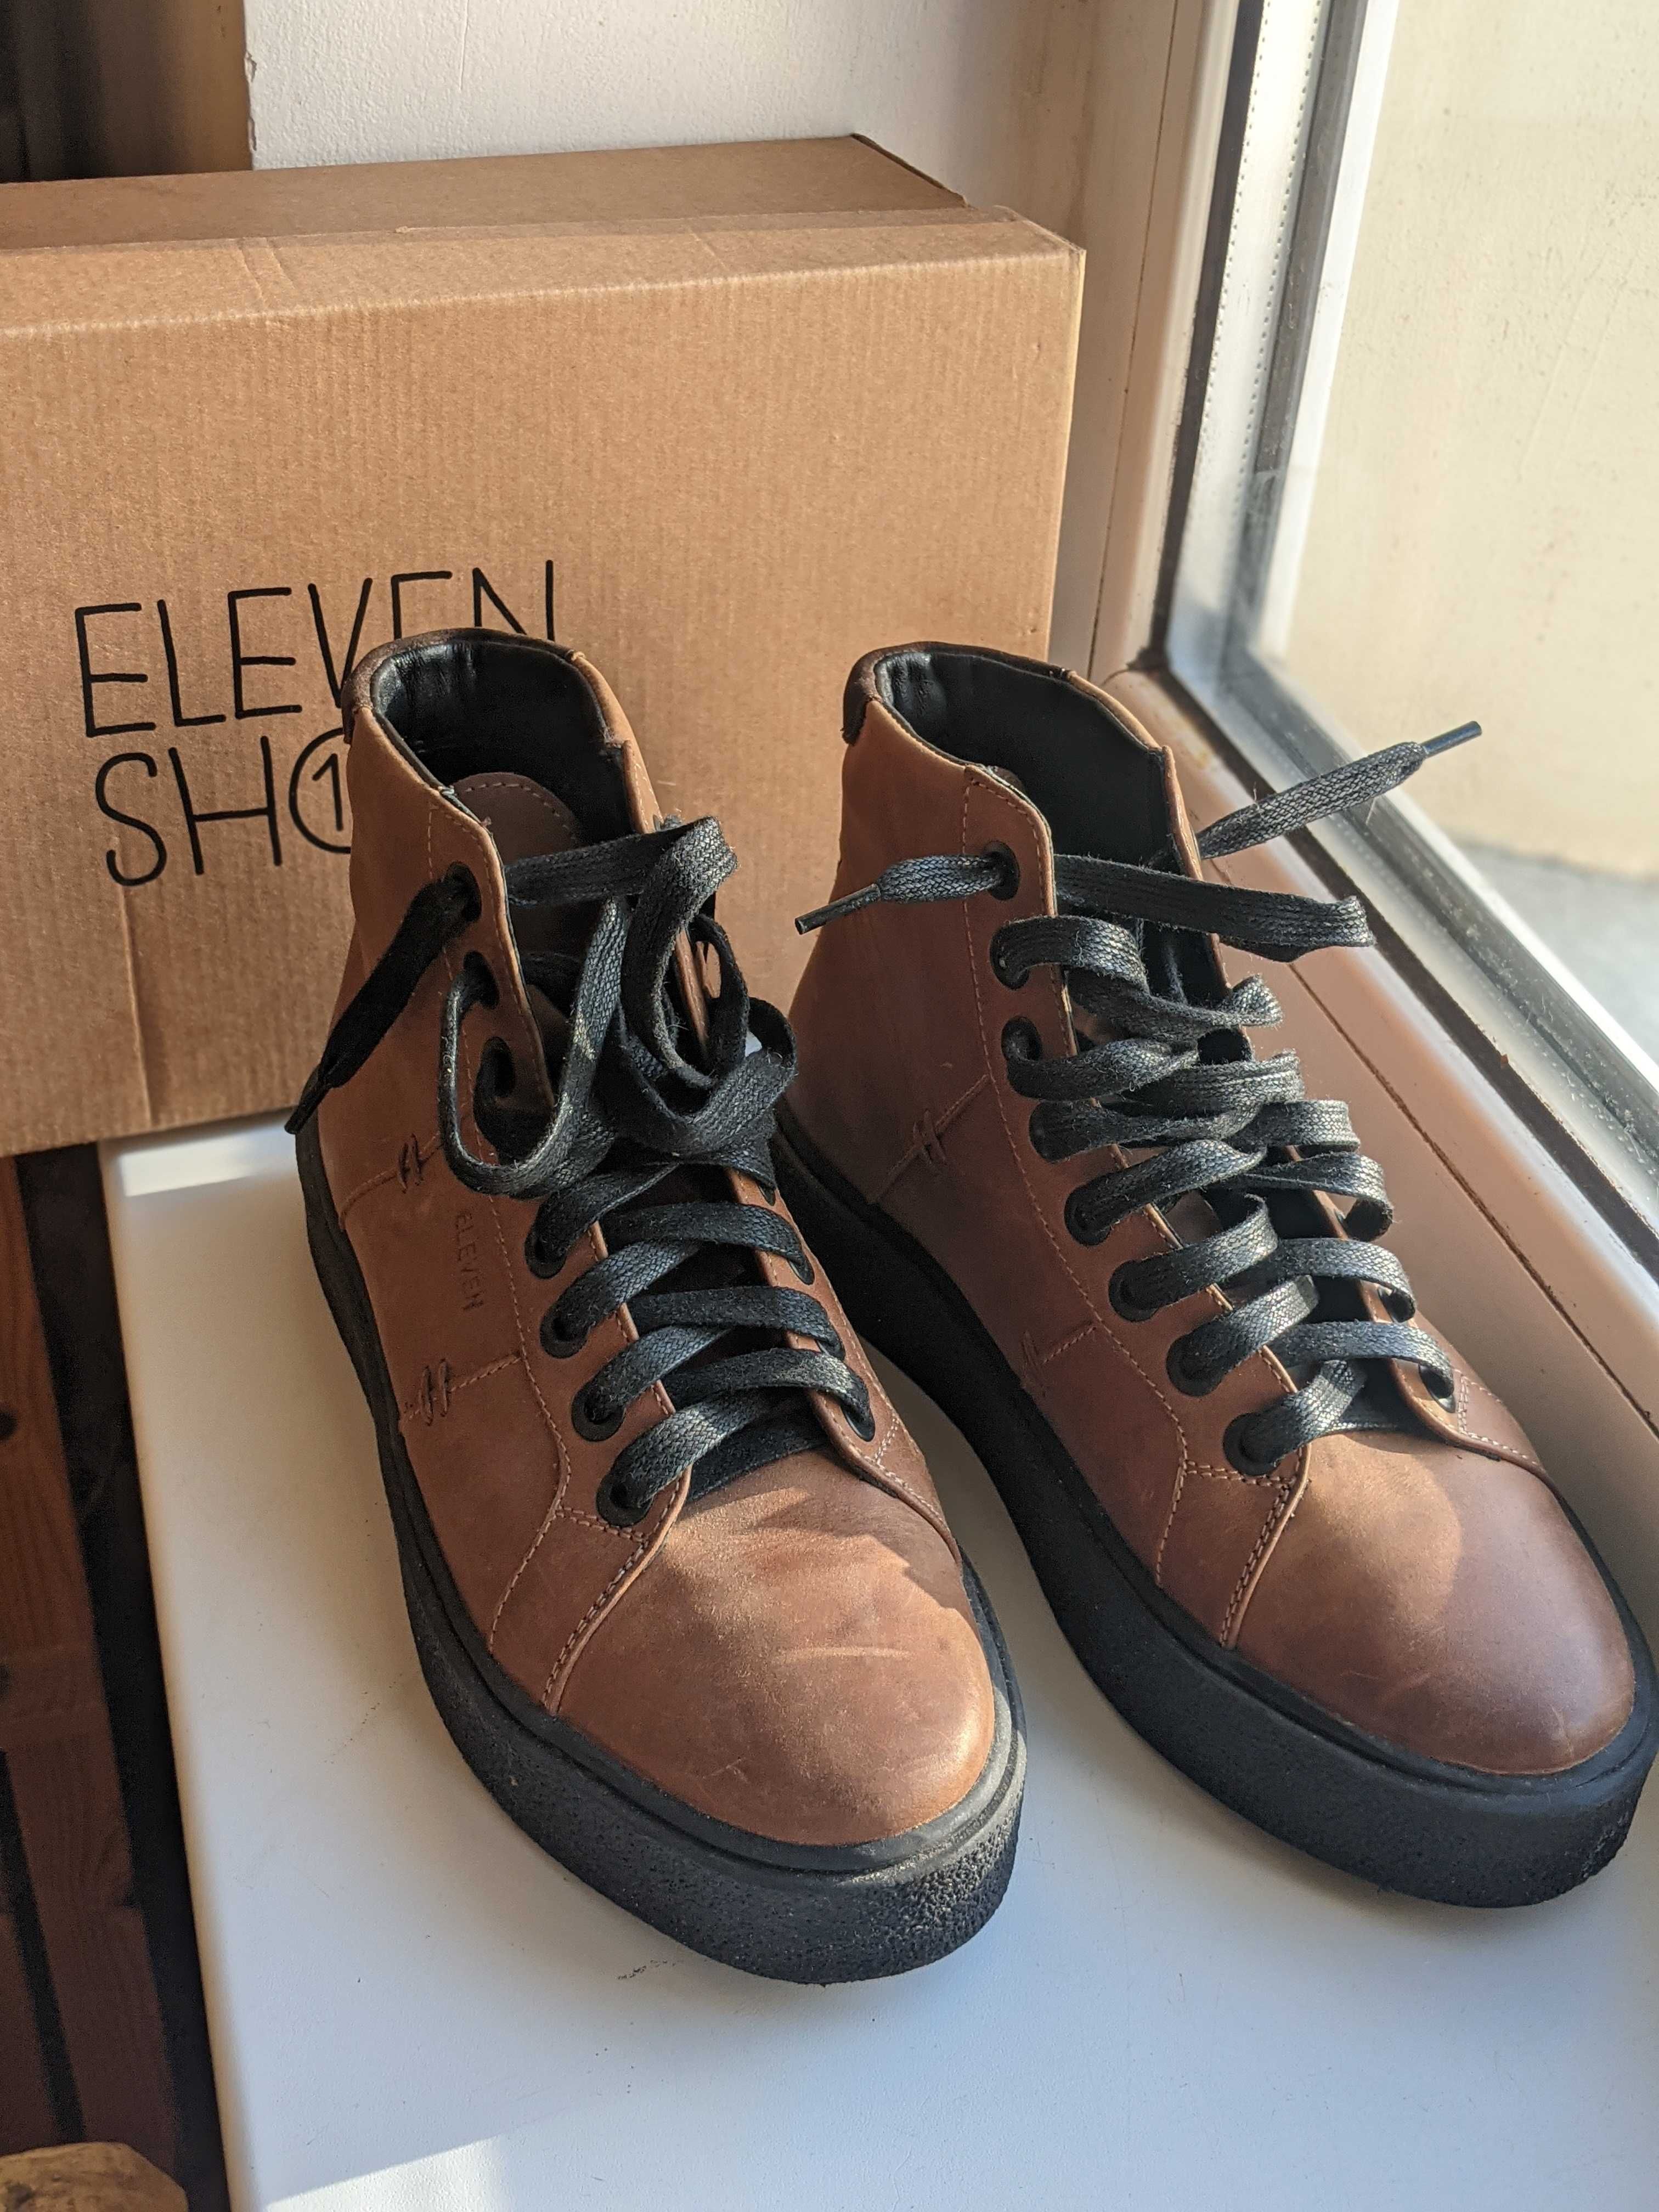 Жіночі стильні ботинки черевики український виробник Eleven shoes